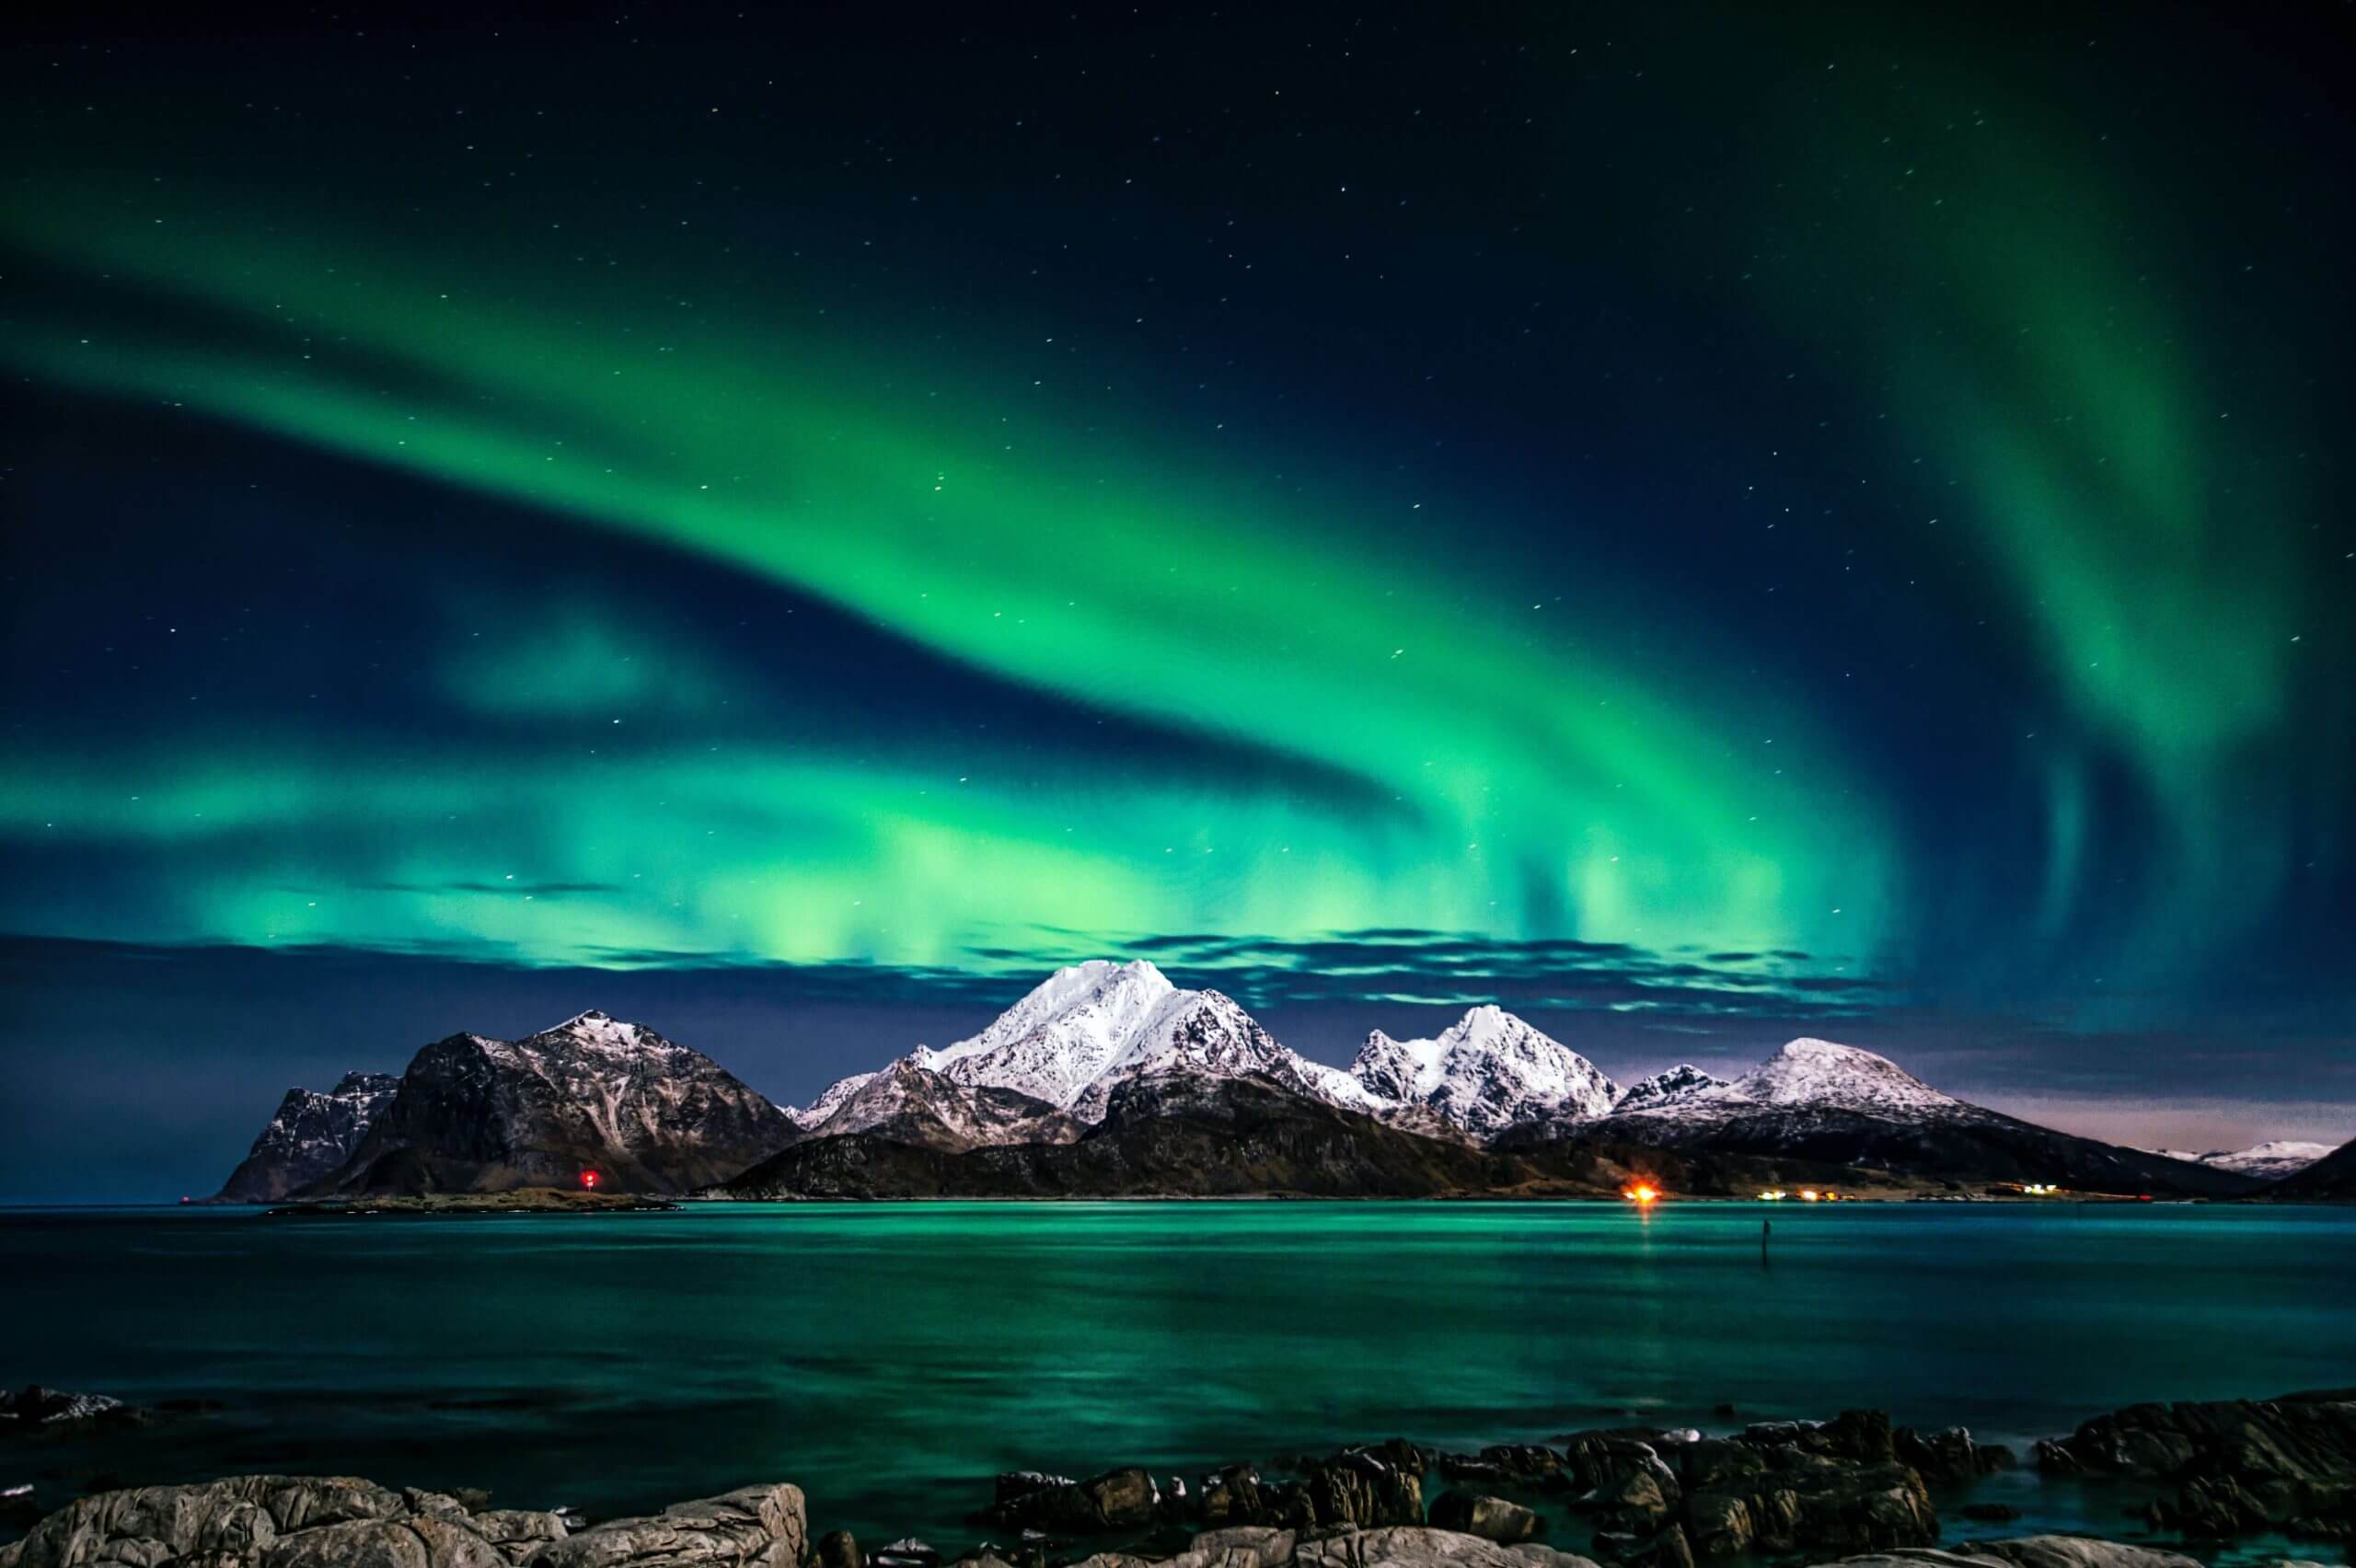 Călătorie în țara de gheață și foc: Norvegia și fenomenele sale geologice unice